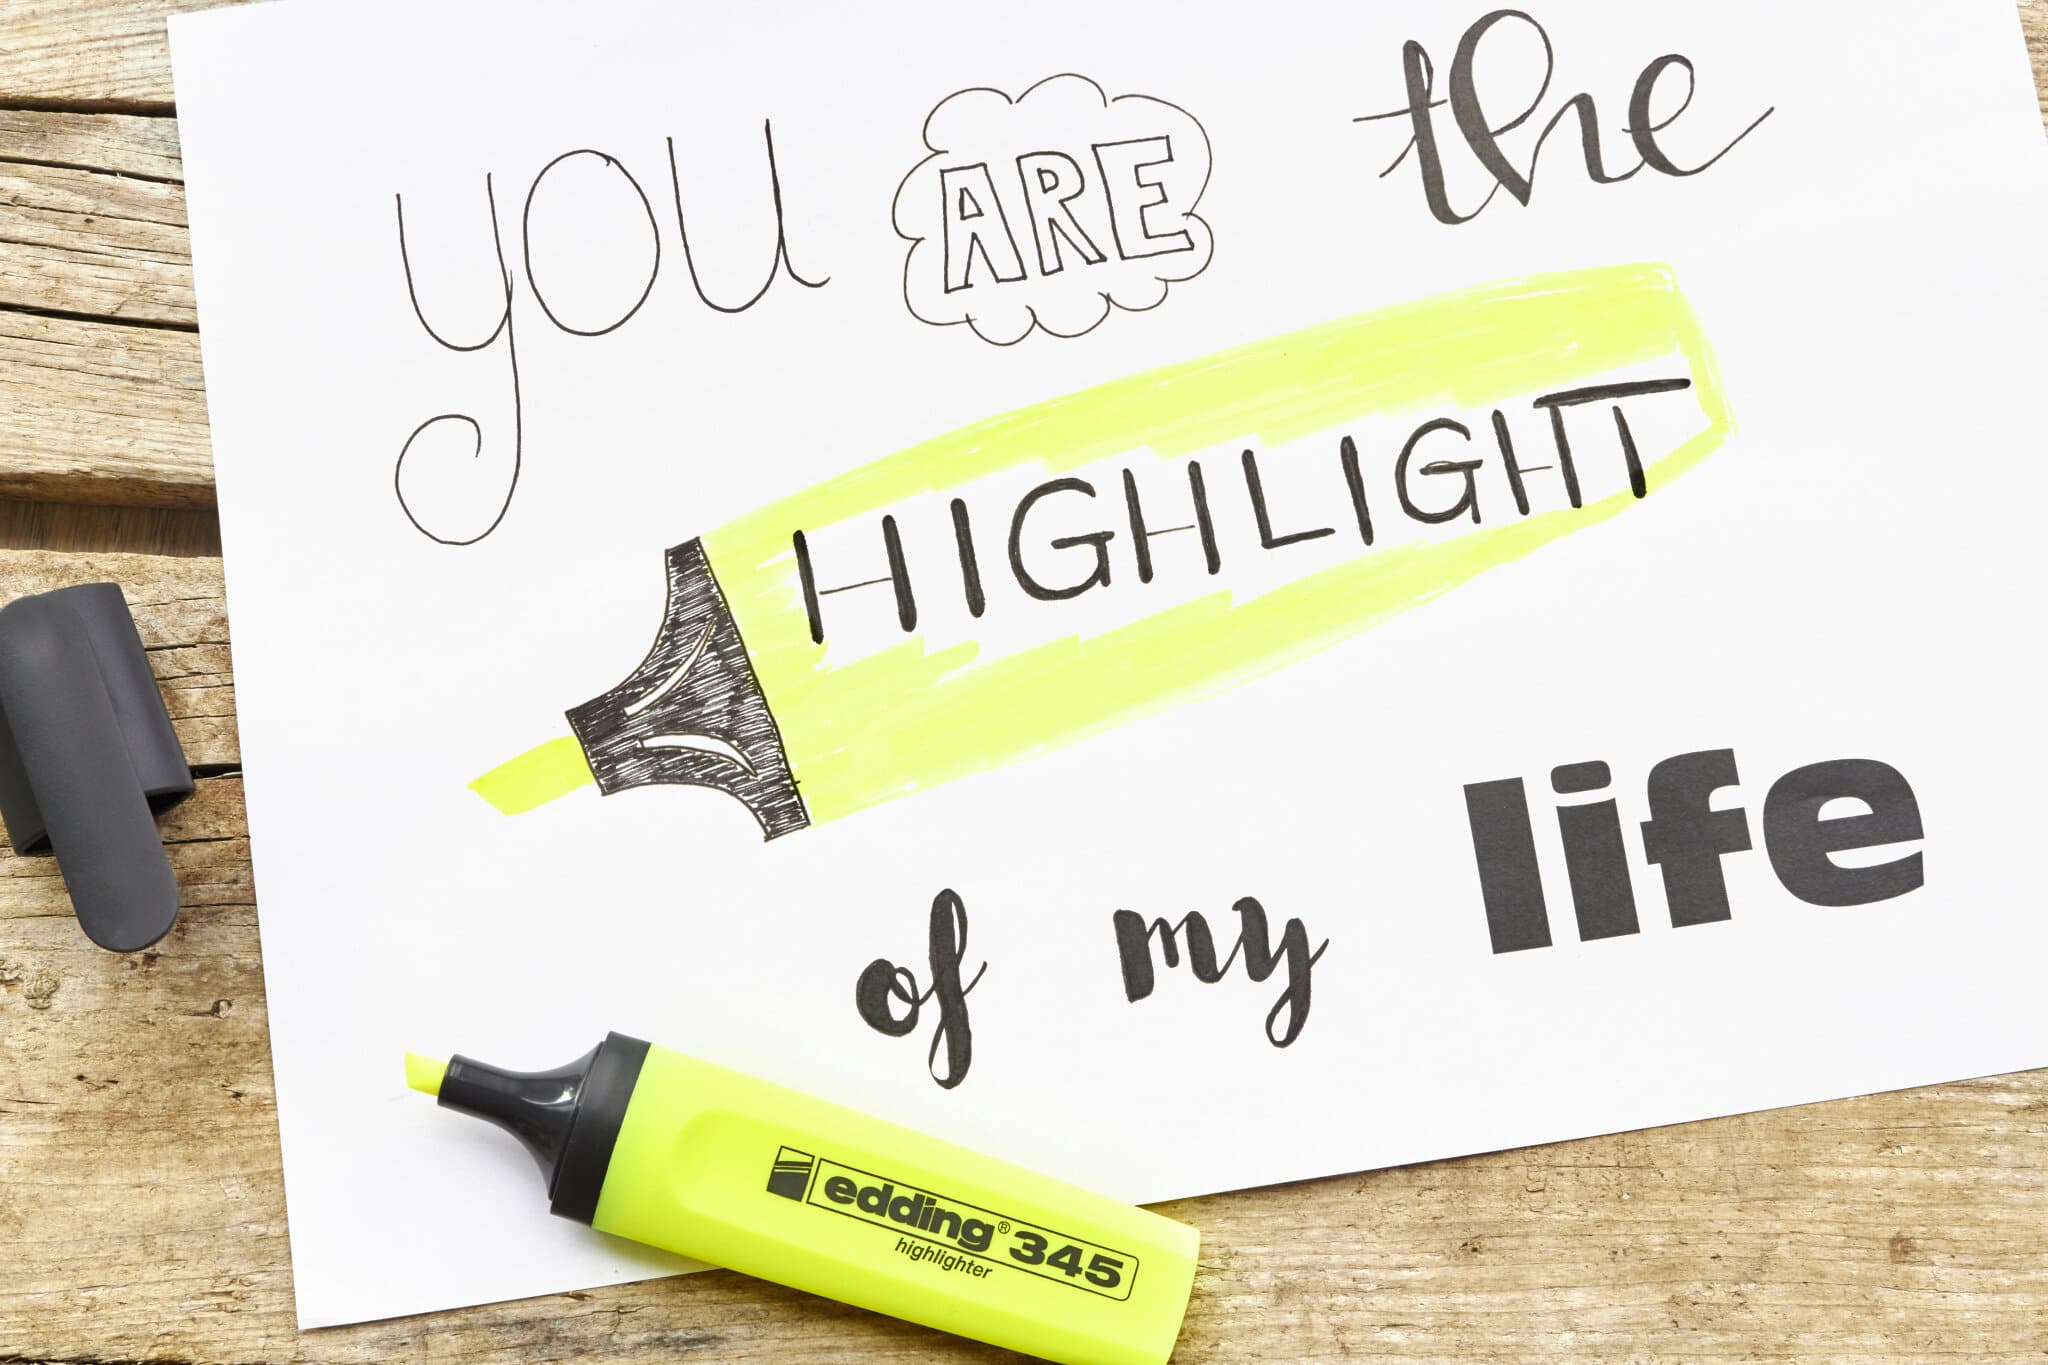 Eine kreative Botschaft mit der Aufschrift „Du bist der Höhepunkt meines Lebens“, wobei das Wort „Highlight“ mit einem leuchtend gelben edding 345 Textmarker hervorgehoben wird und ein verspieltes und verspieltes Gefühl vermittelt